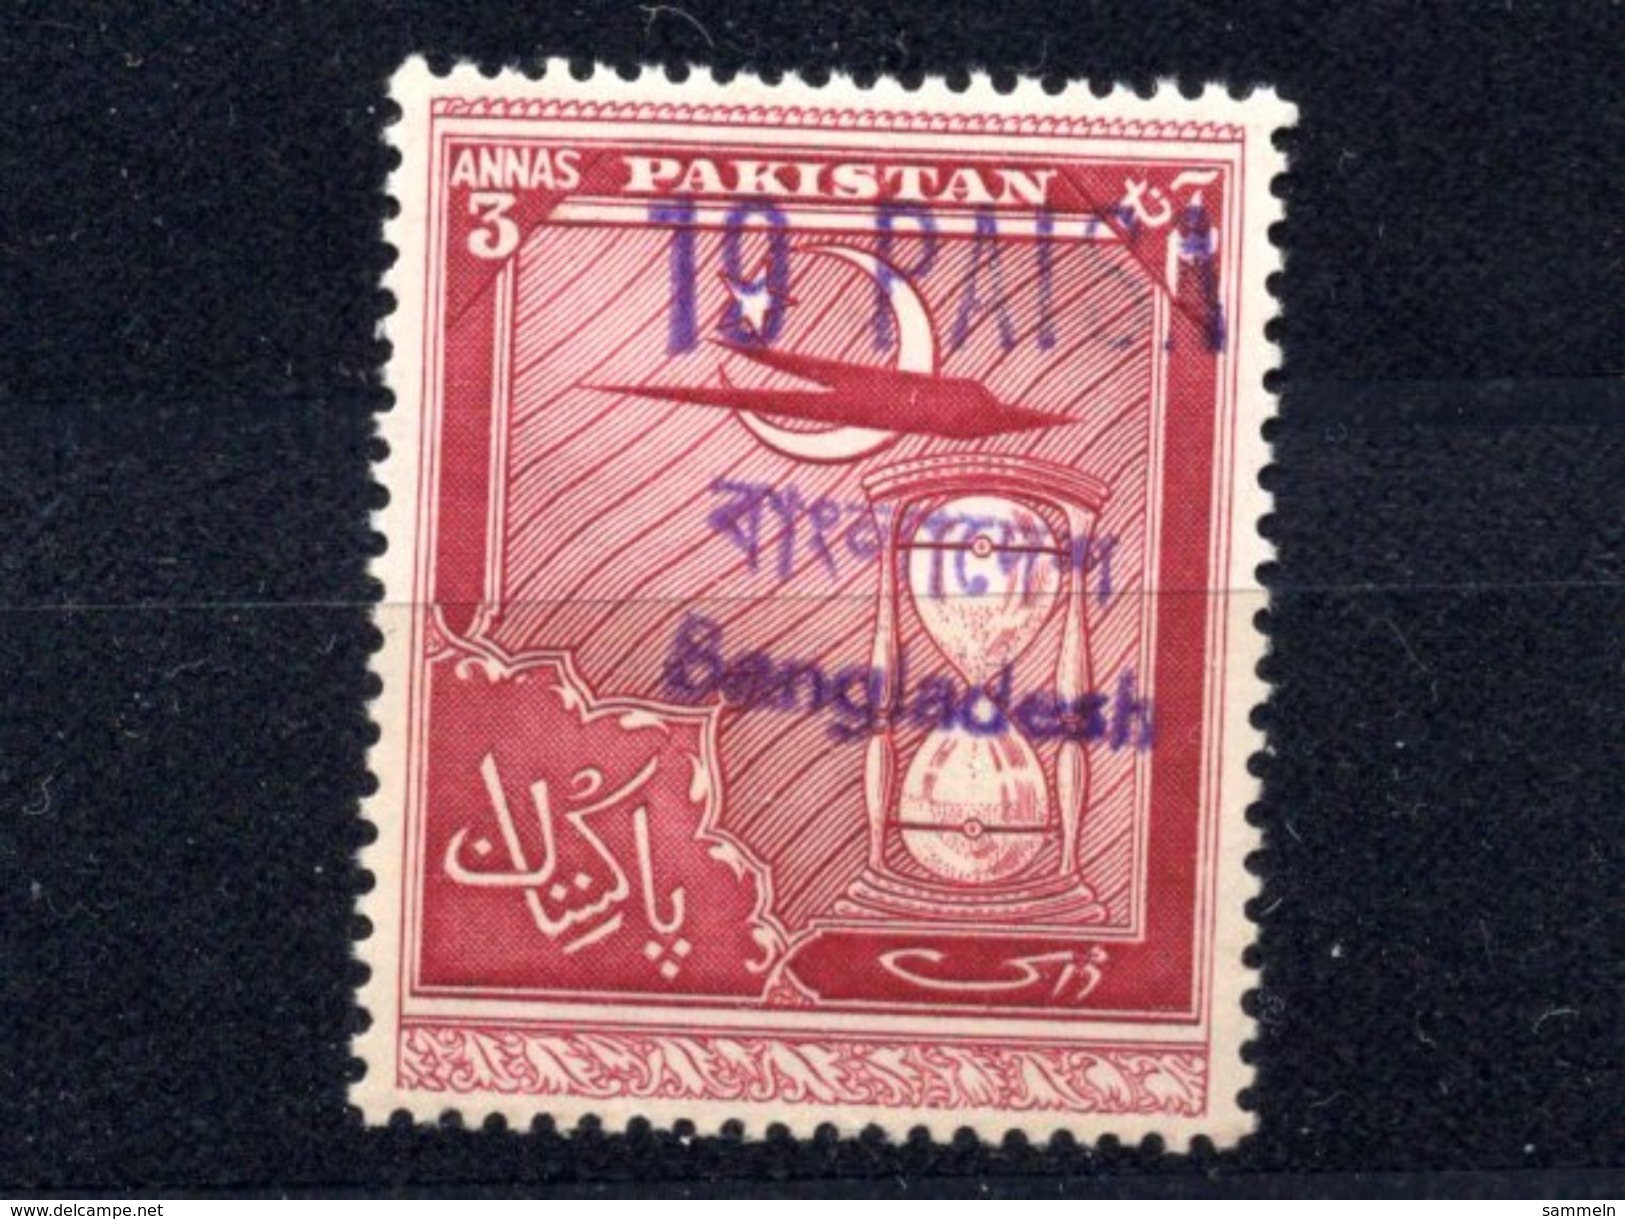 9195 Bangla Desh Überdruck Overprint Provisorien Pakistan Ca. 1971/1972 Postfrisch Mnh - Bangladesch